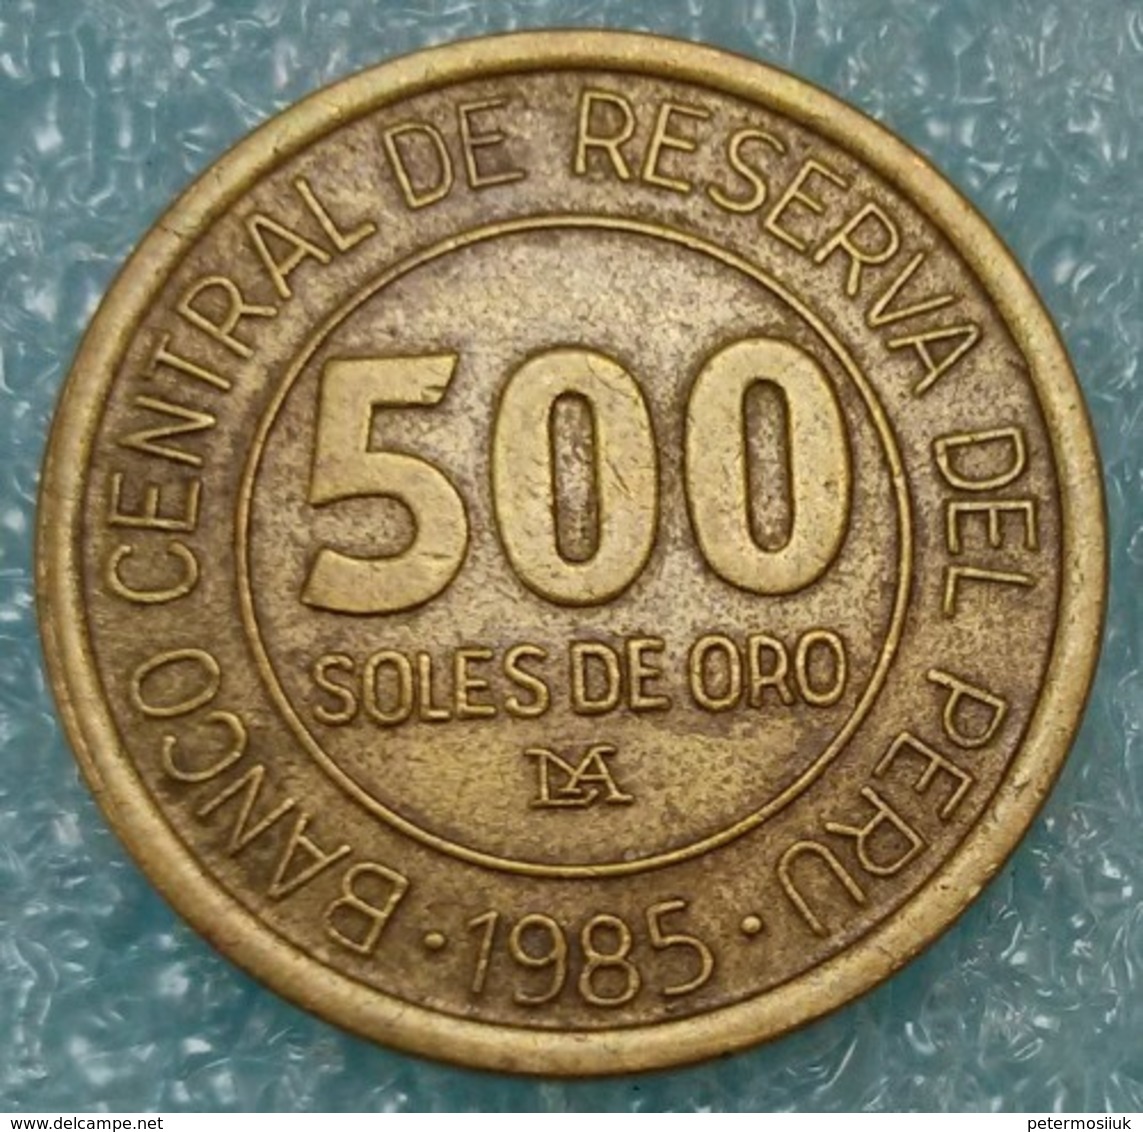 Peru 500 Soles, 1985 -0773 - Perú